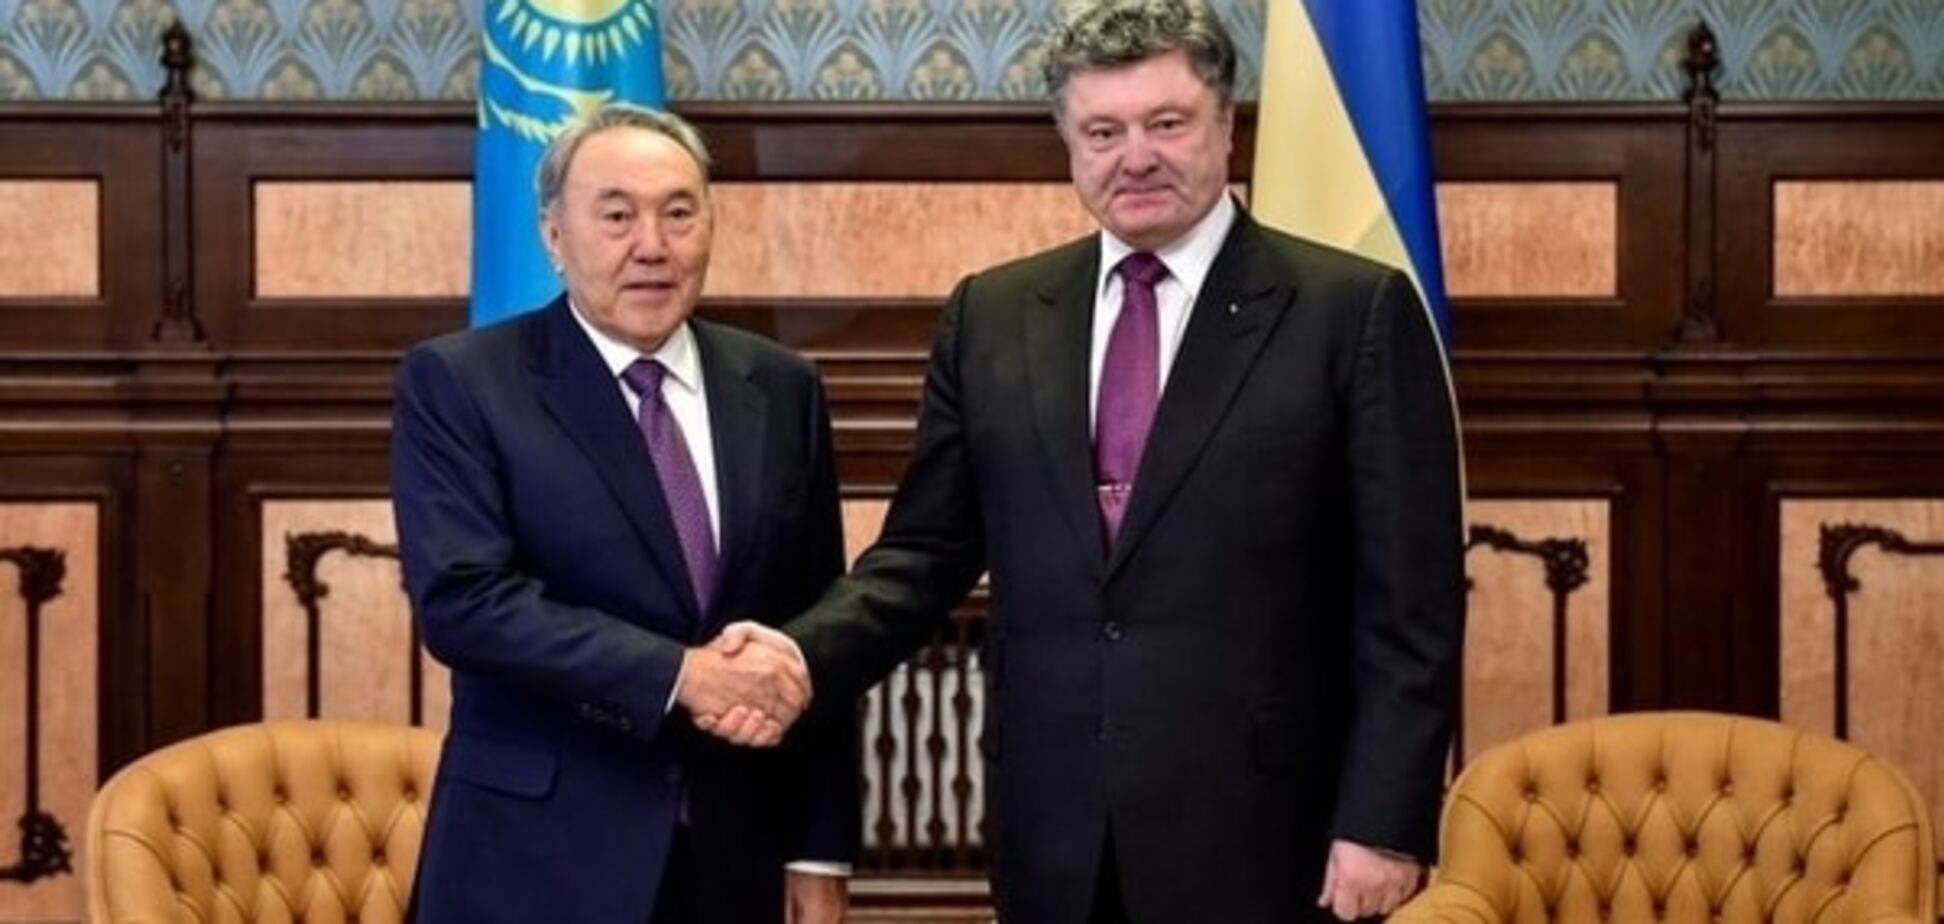 Жизнь в страхе: зачем Назарбаеву визит Порошенко